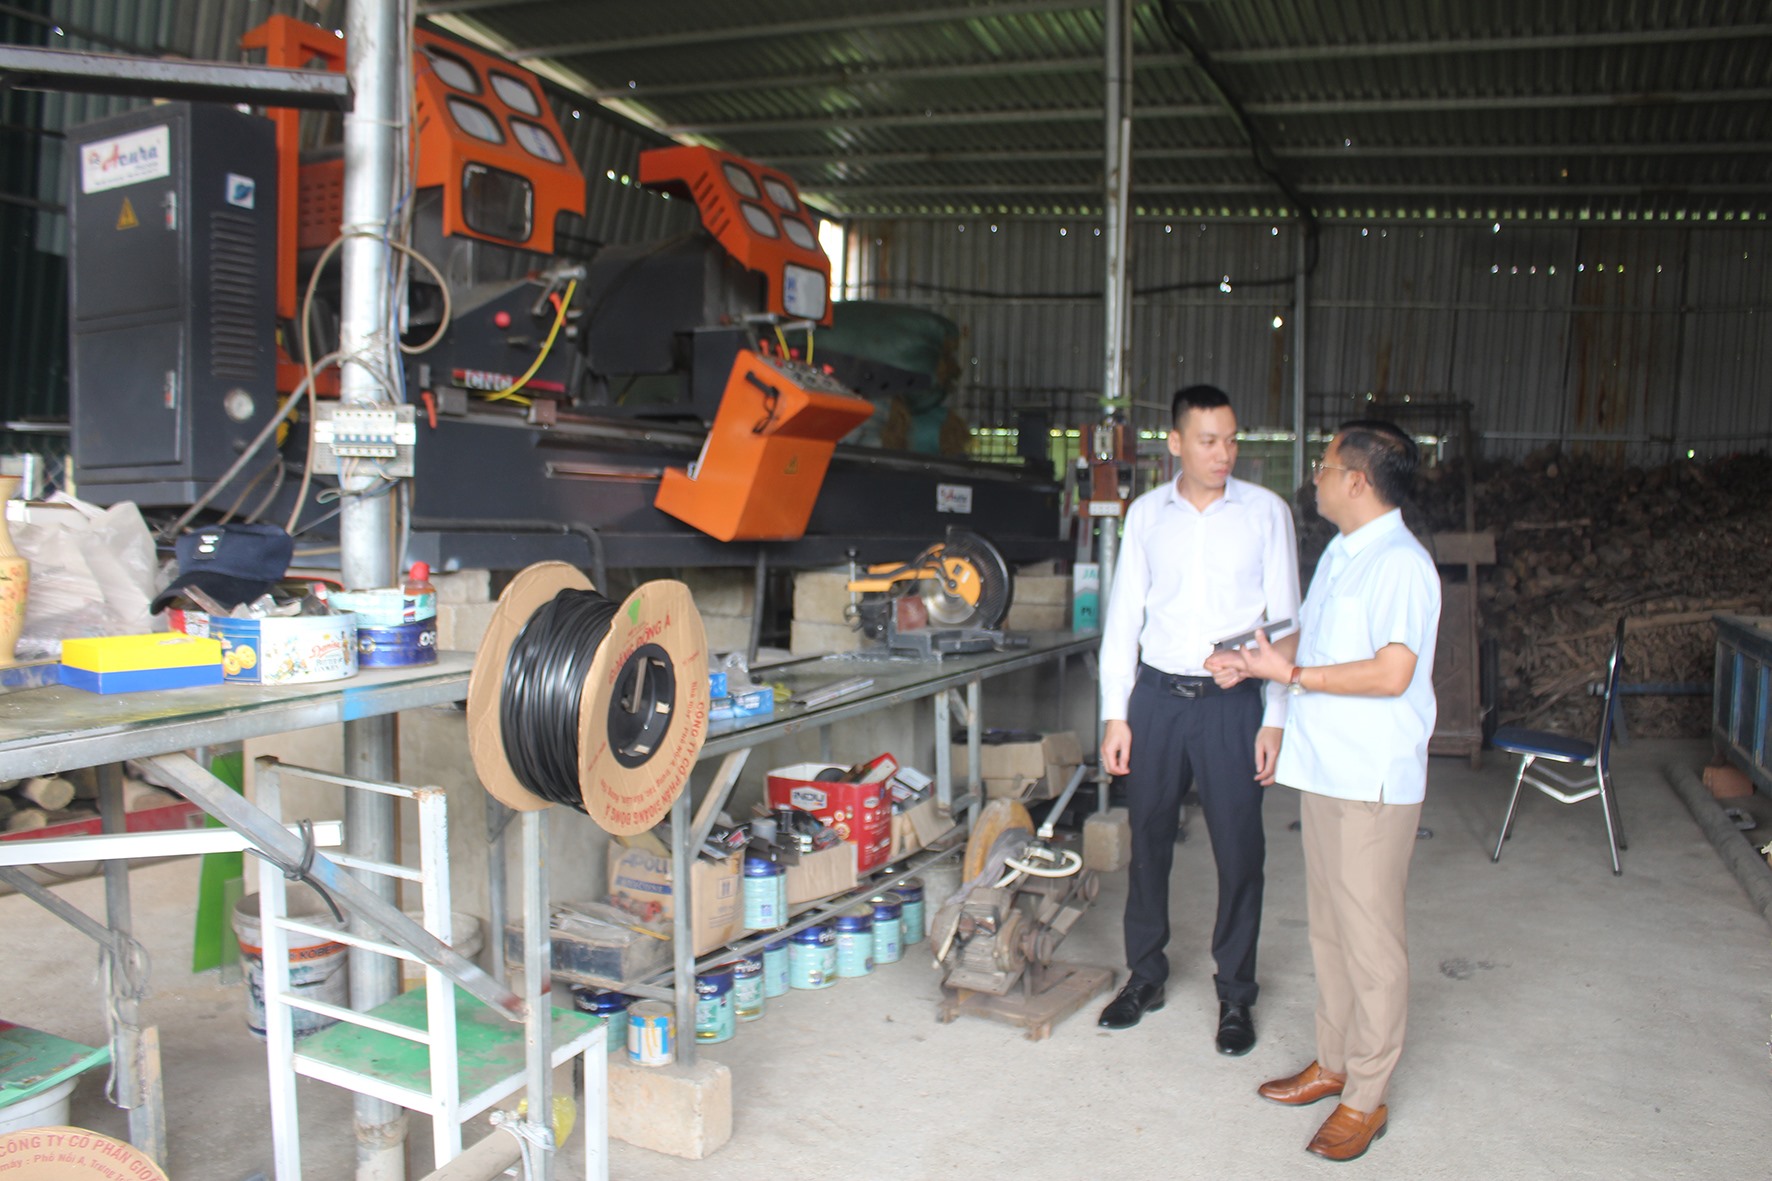 Anh Văn Đình Dũng (bên trái) được thụ hưởng nguồn kinh phí chương trình khuyến công thị xã Quảng Trị để đầu tư hệ thống máy cắt nhôm CNC cao cấp, giúp tự động hóa quá trình sản xuất -Ảnh: H.T